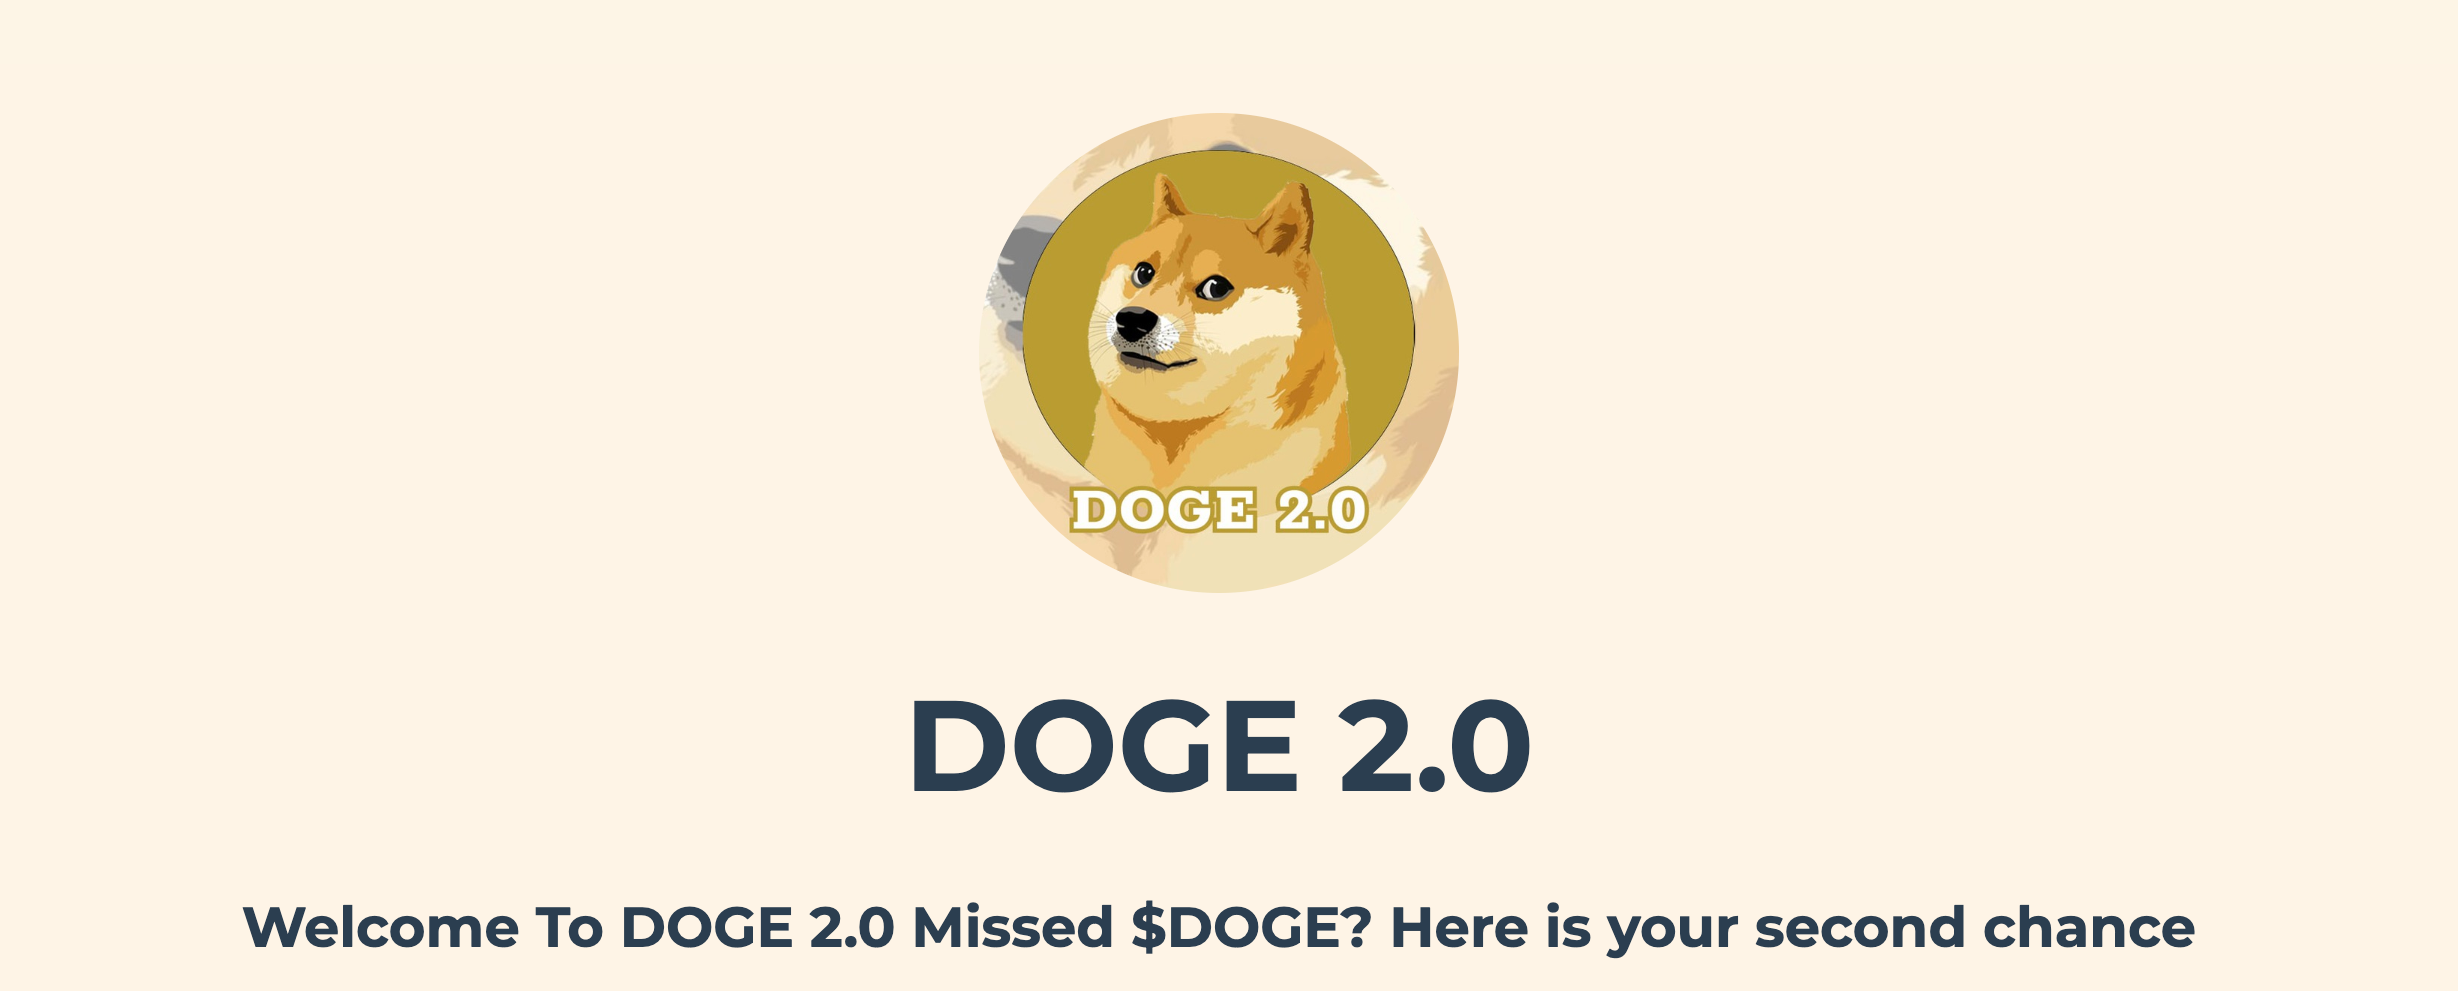 Doge 2.0